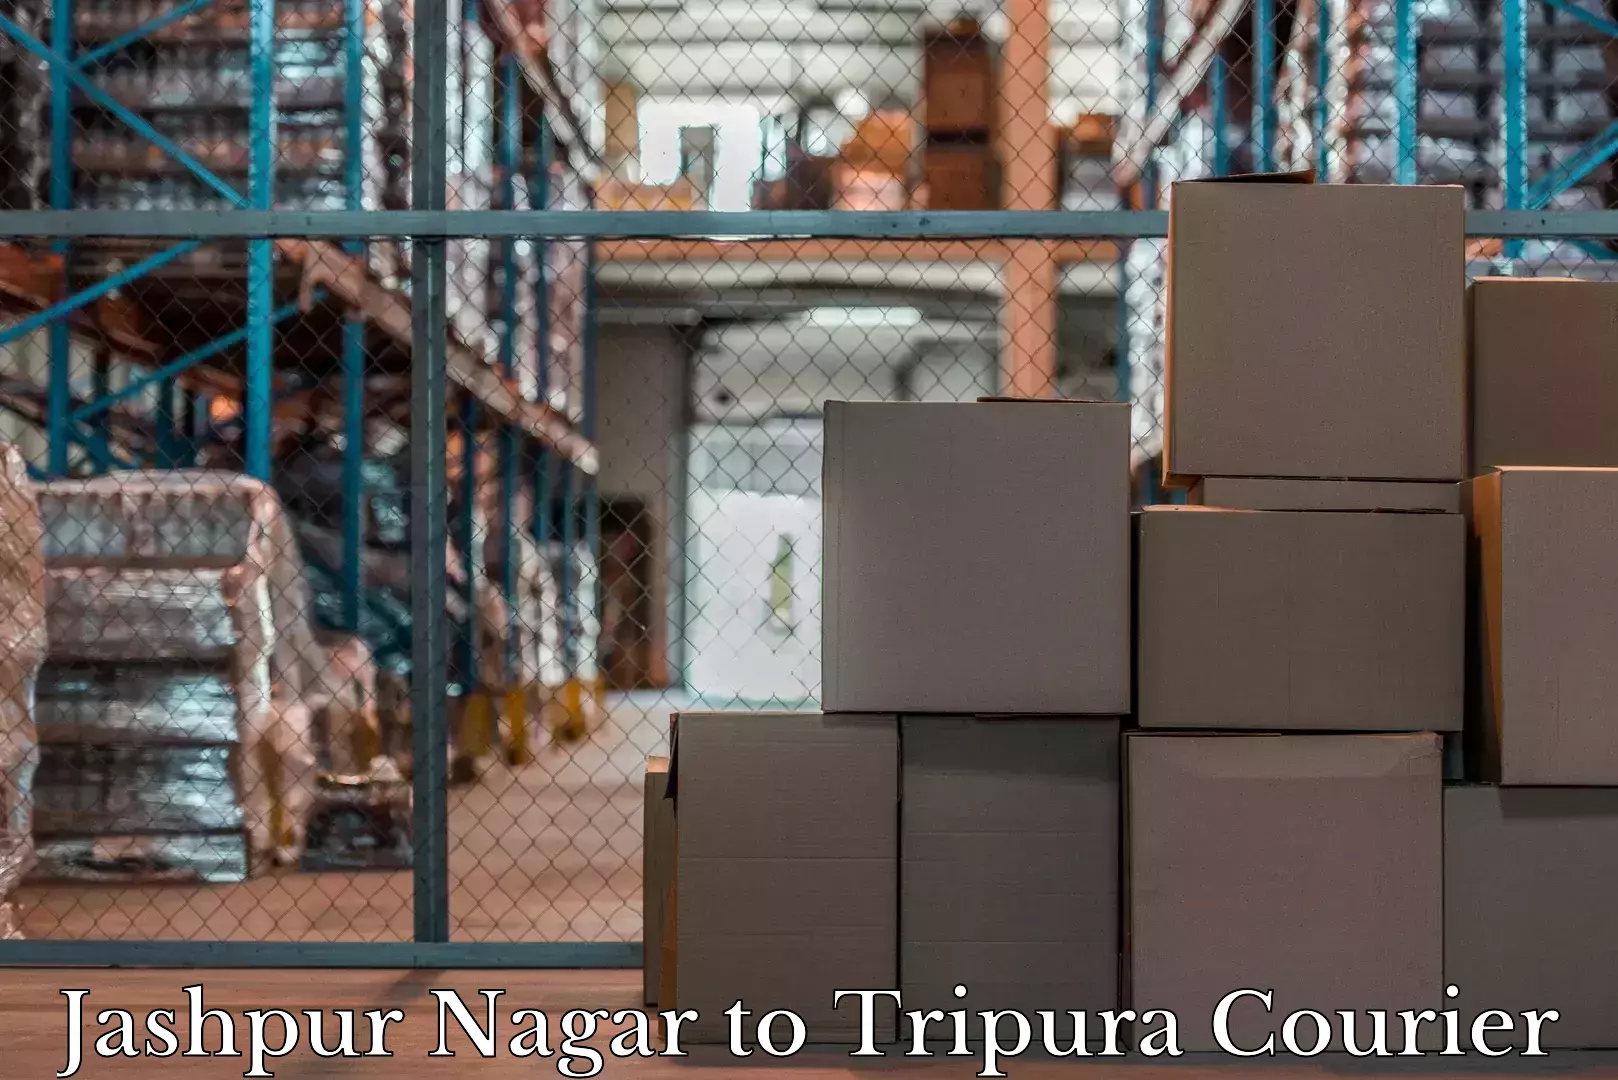 High-quality baggage shipment Jashpur Nagar to Udaipur Tripura